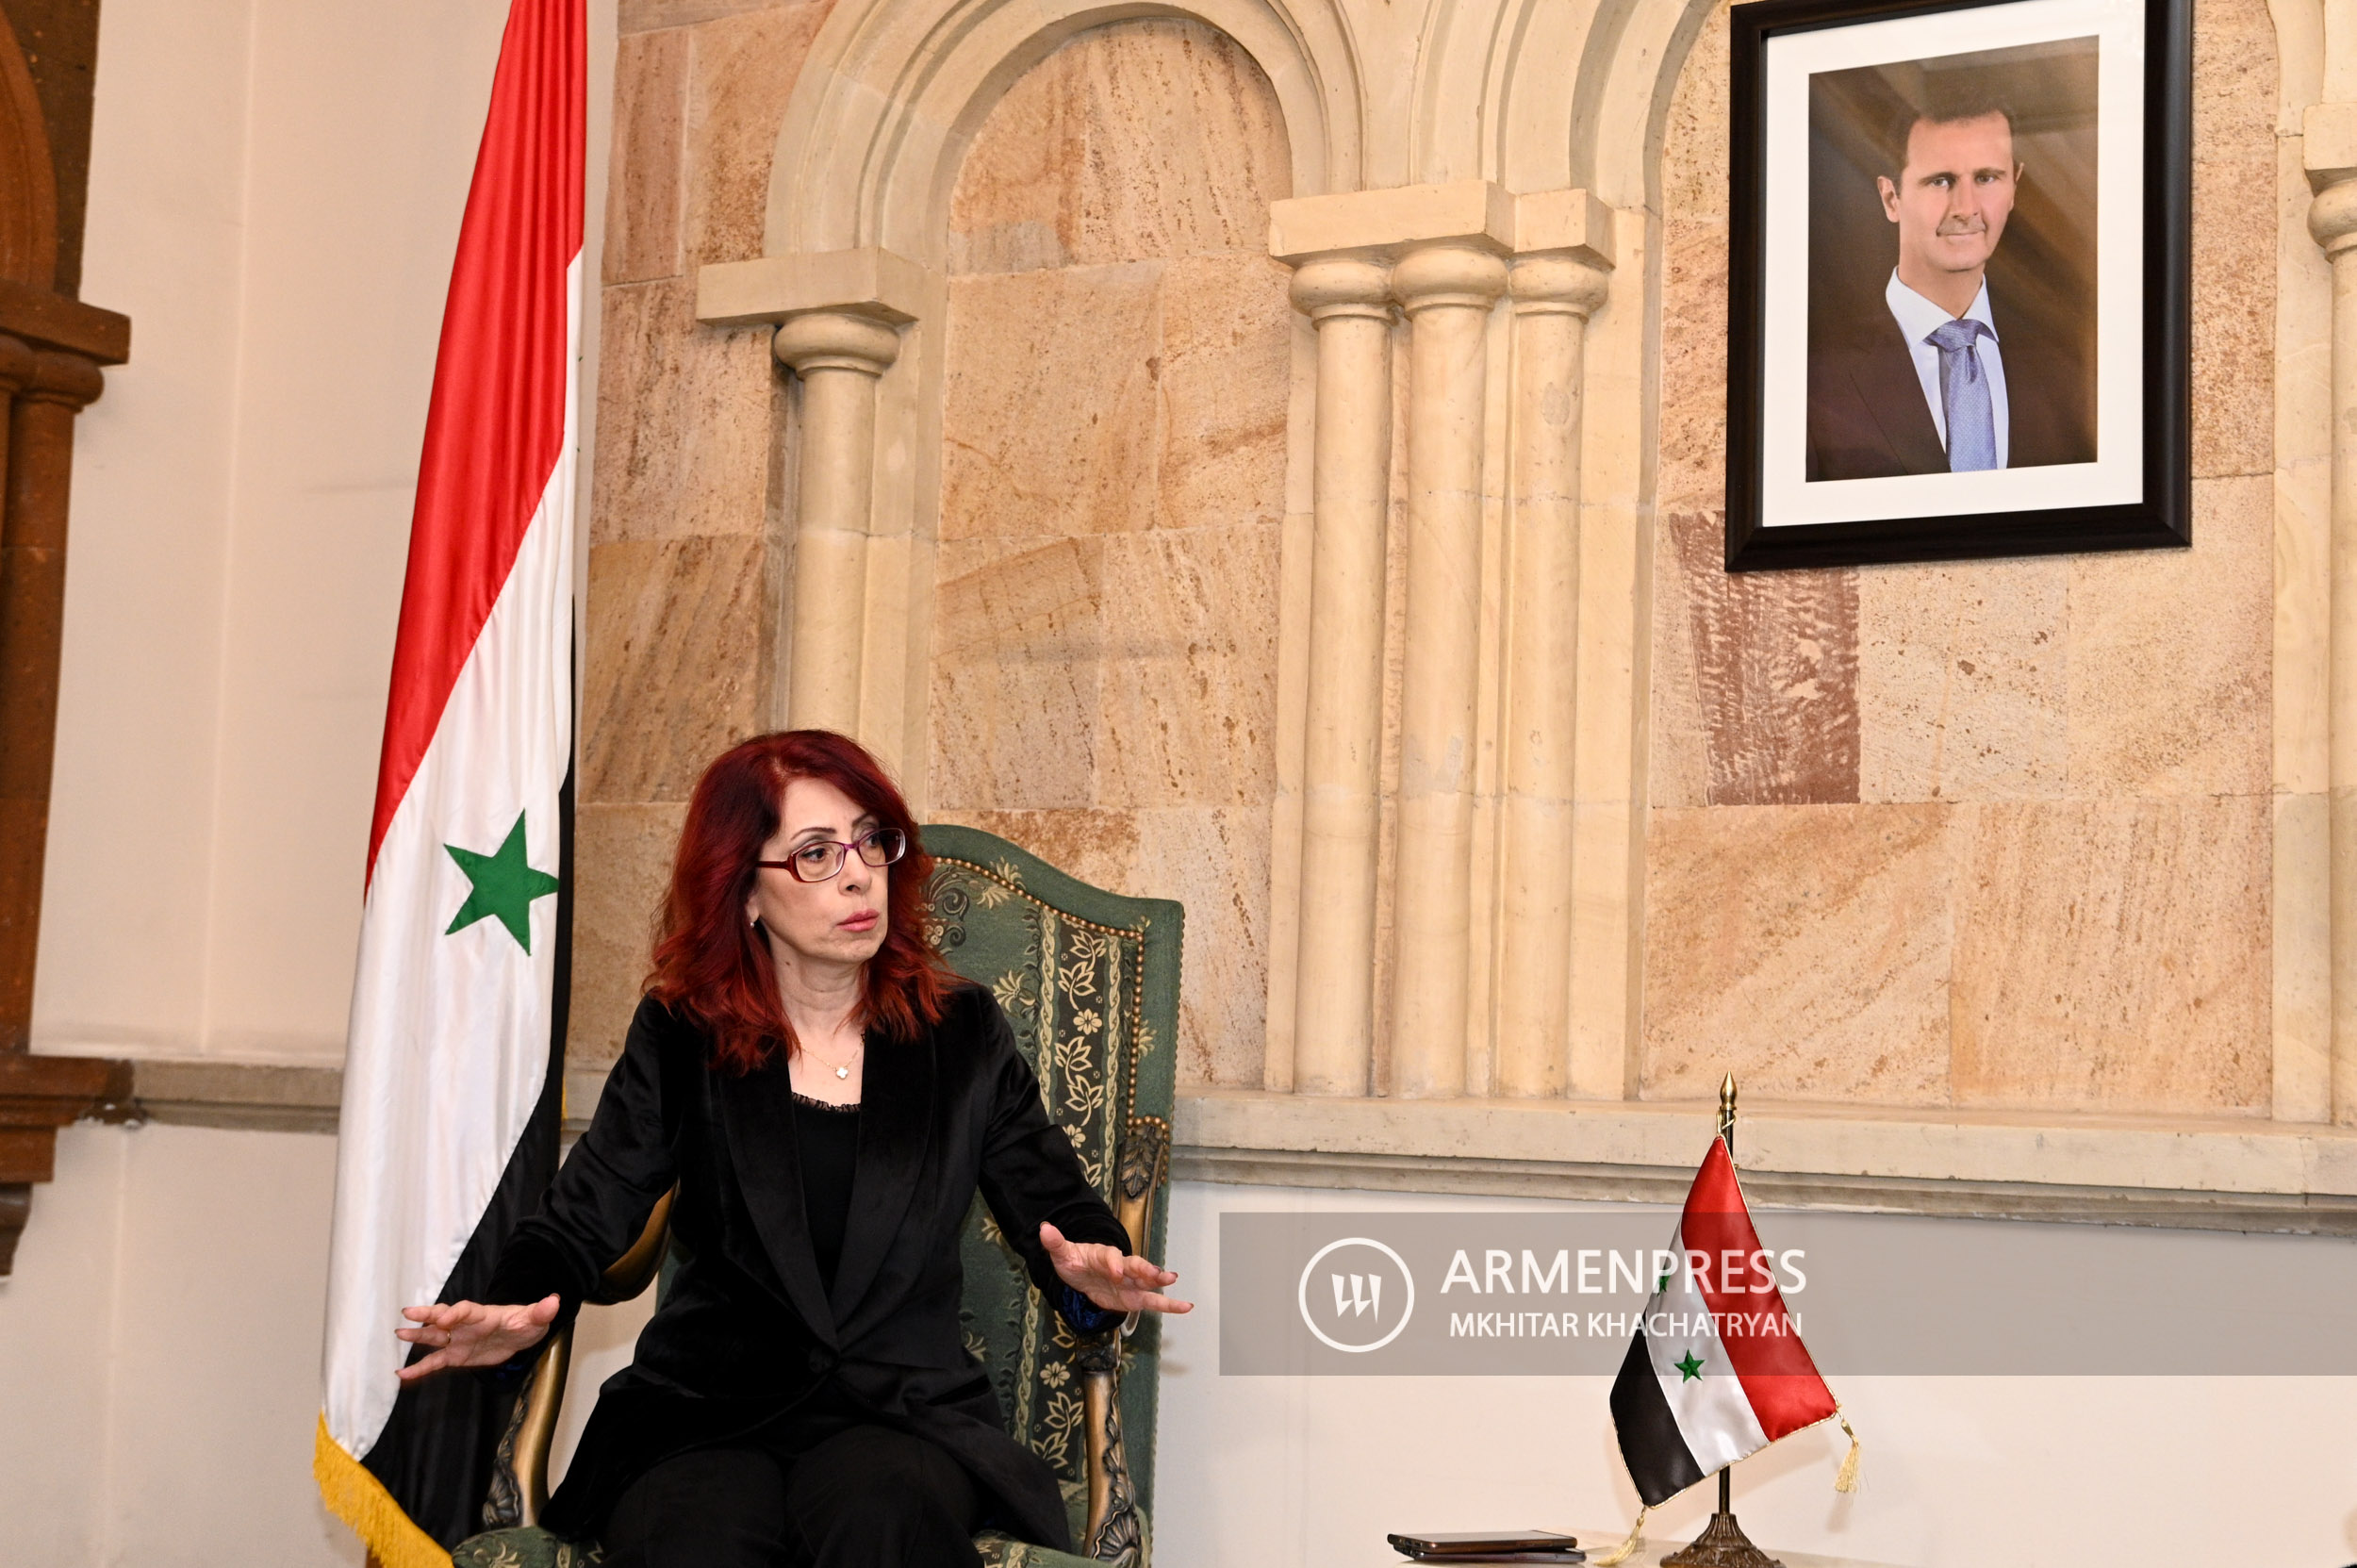 Kedutaan Besar Suriah di Armenia mengadakan penggalangan dana.  wawancara duta besar